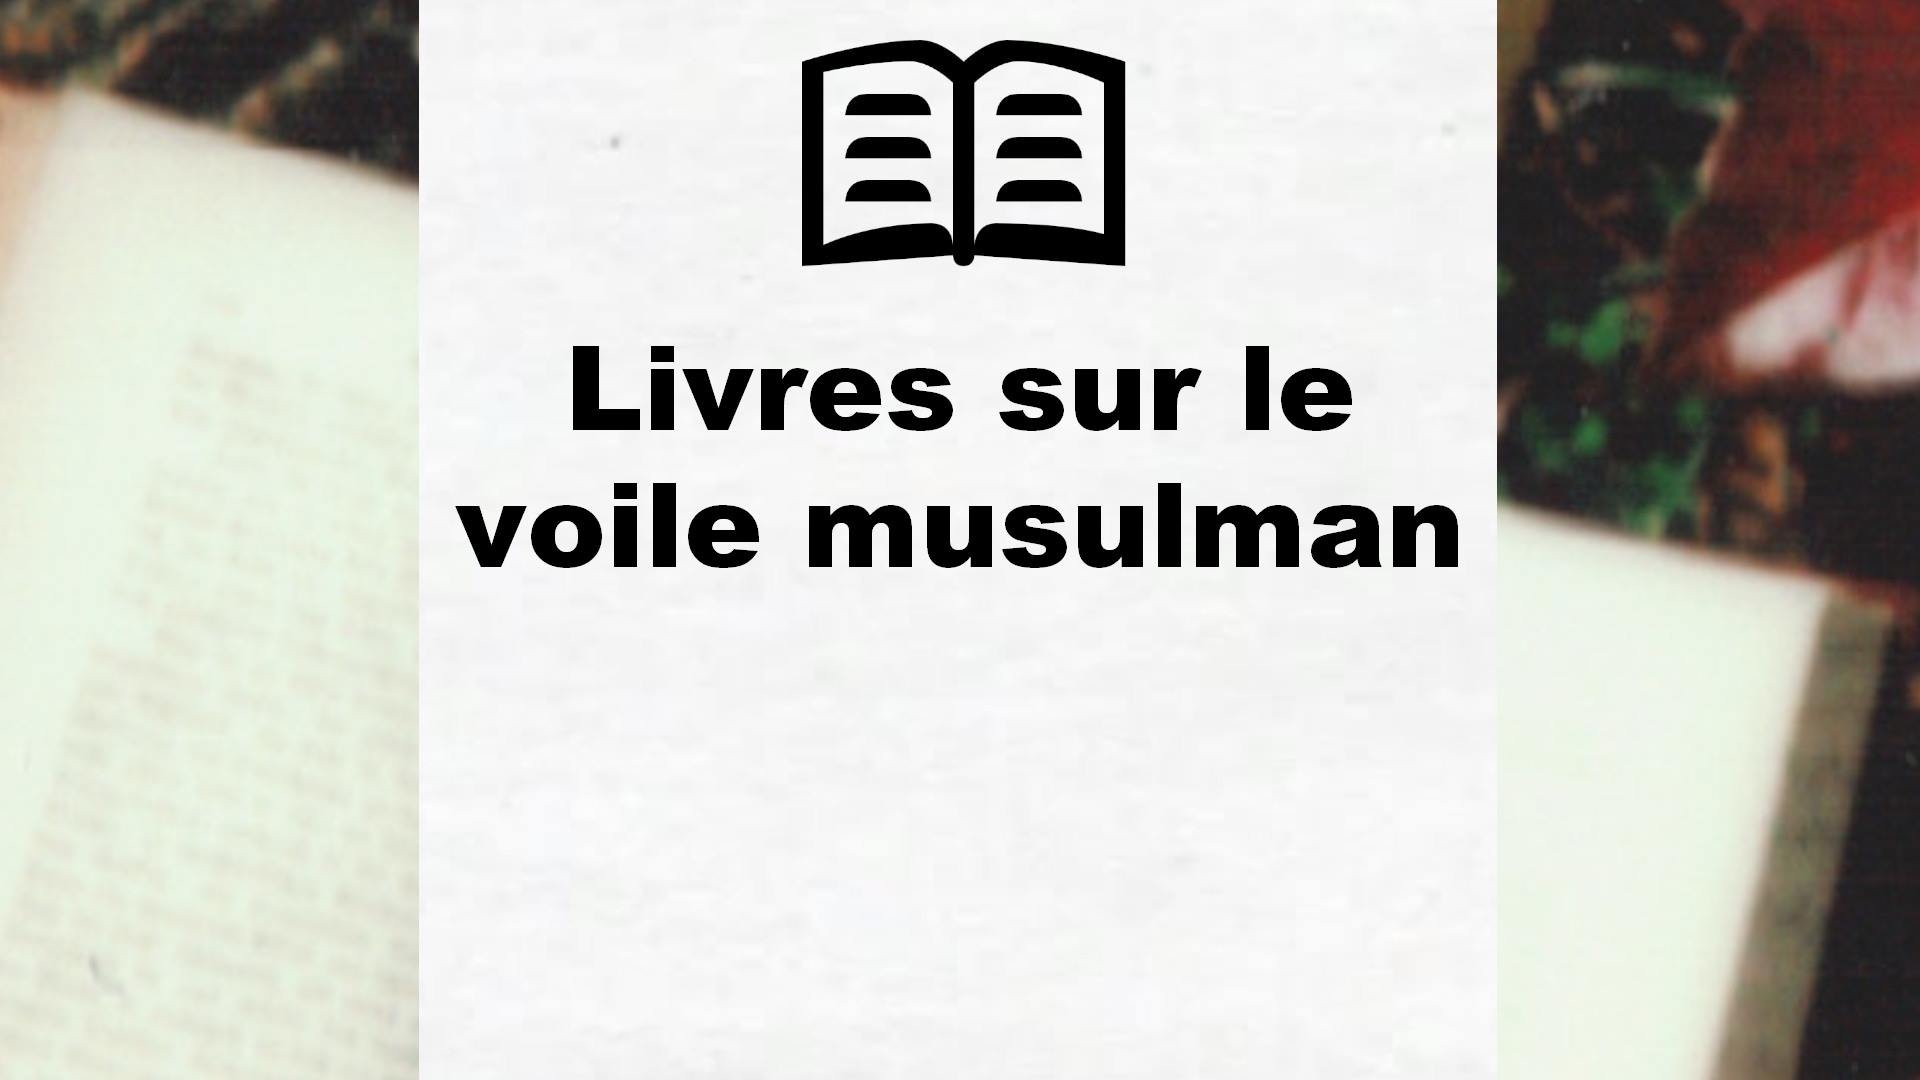 Livres sur le voile musulman